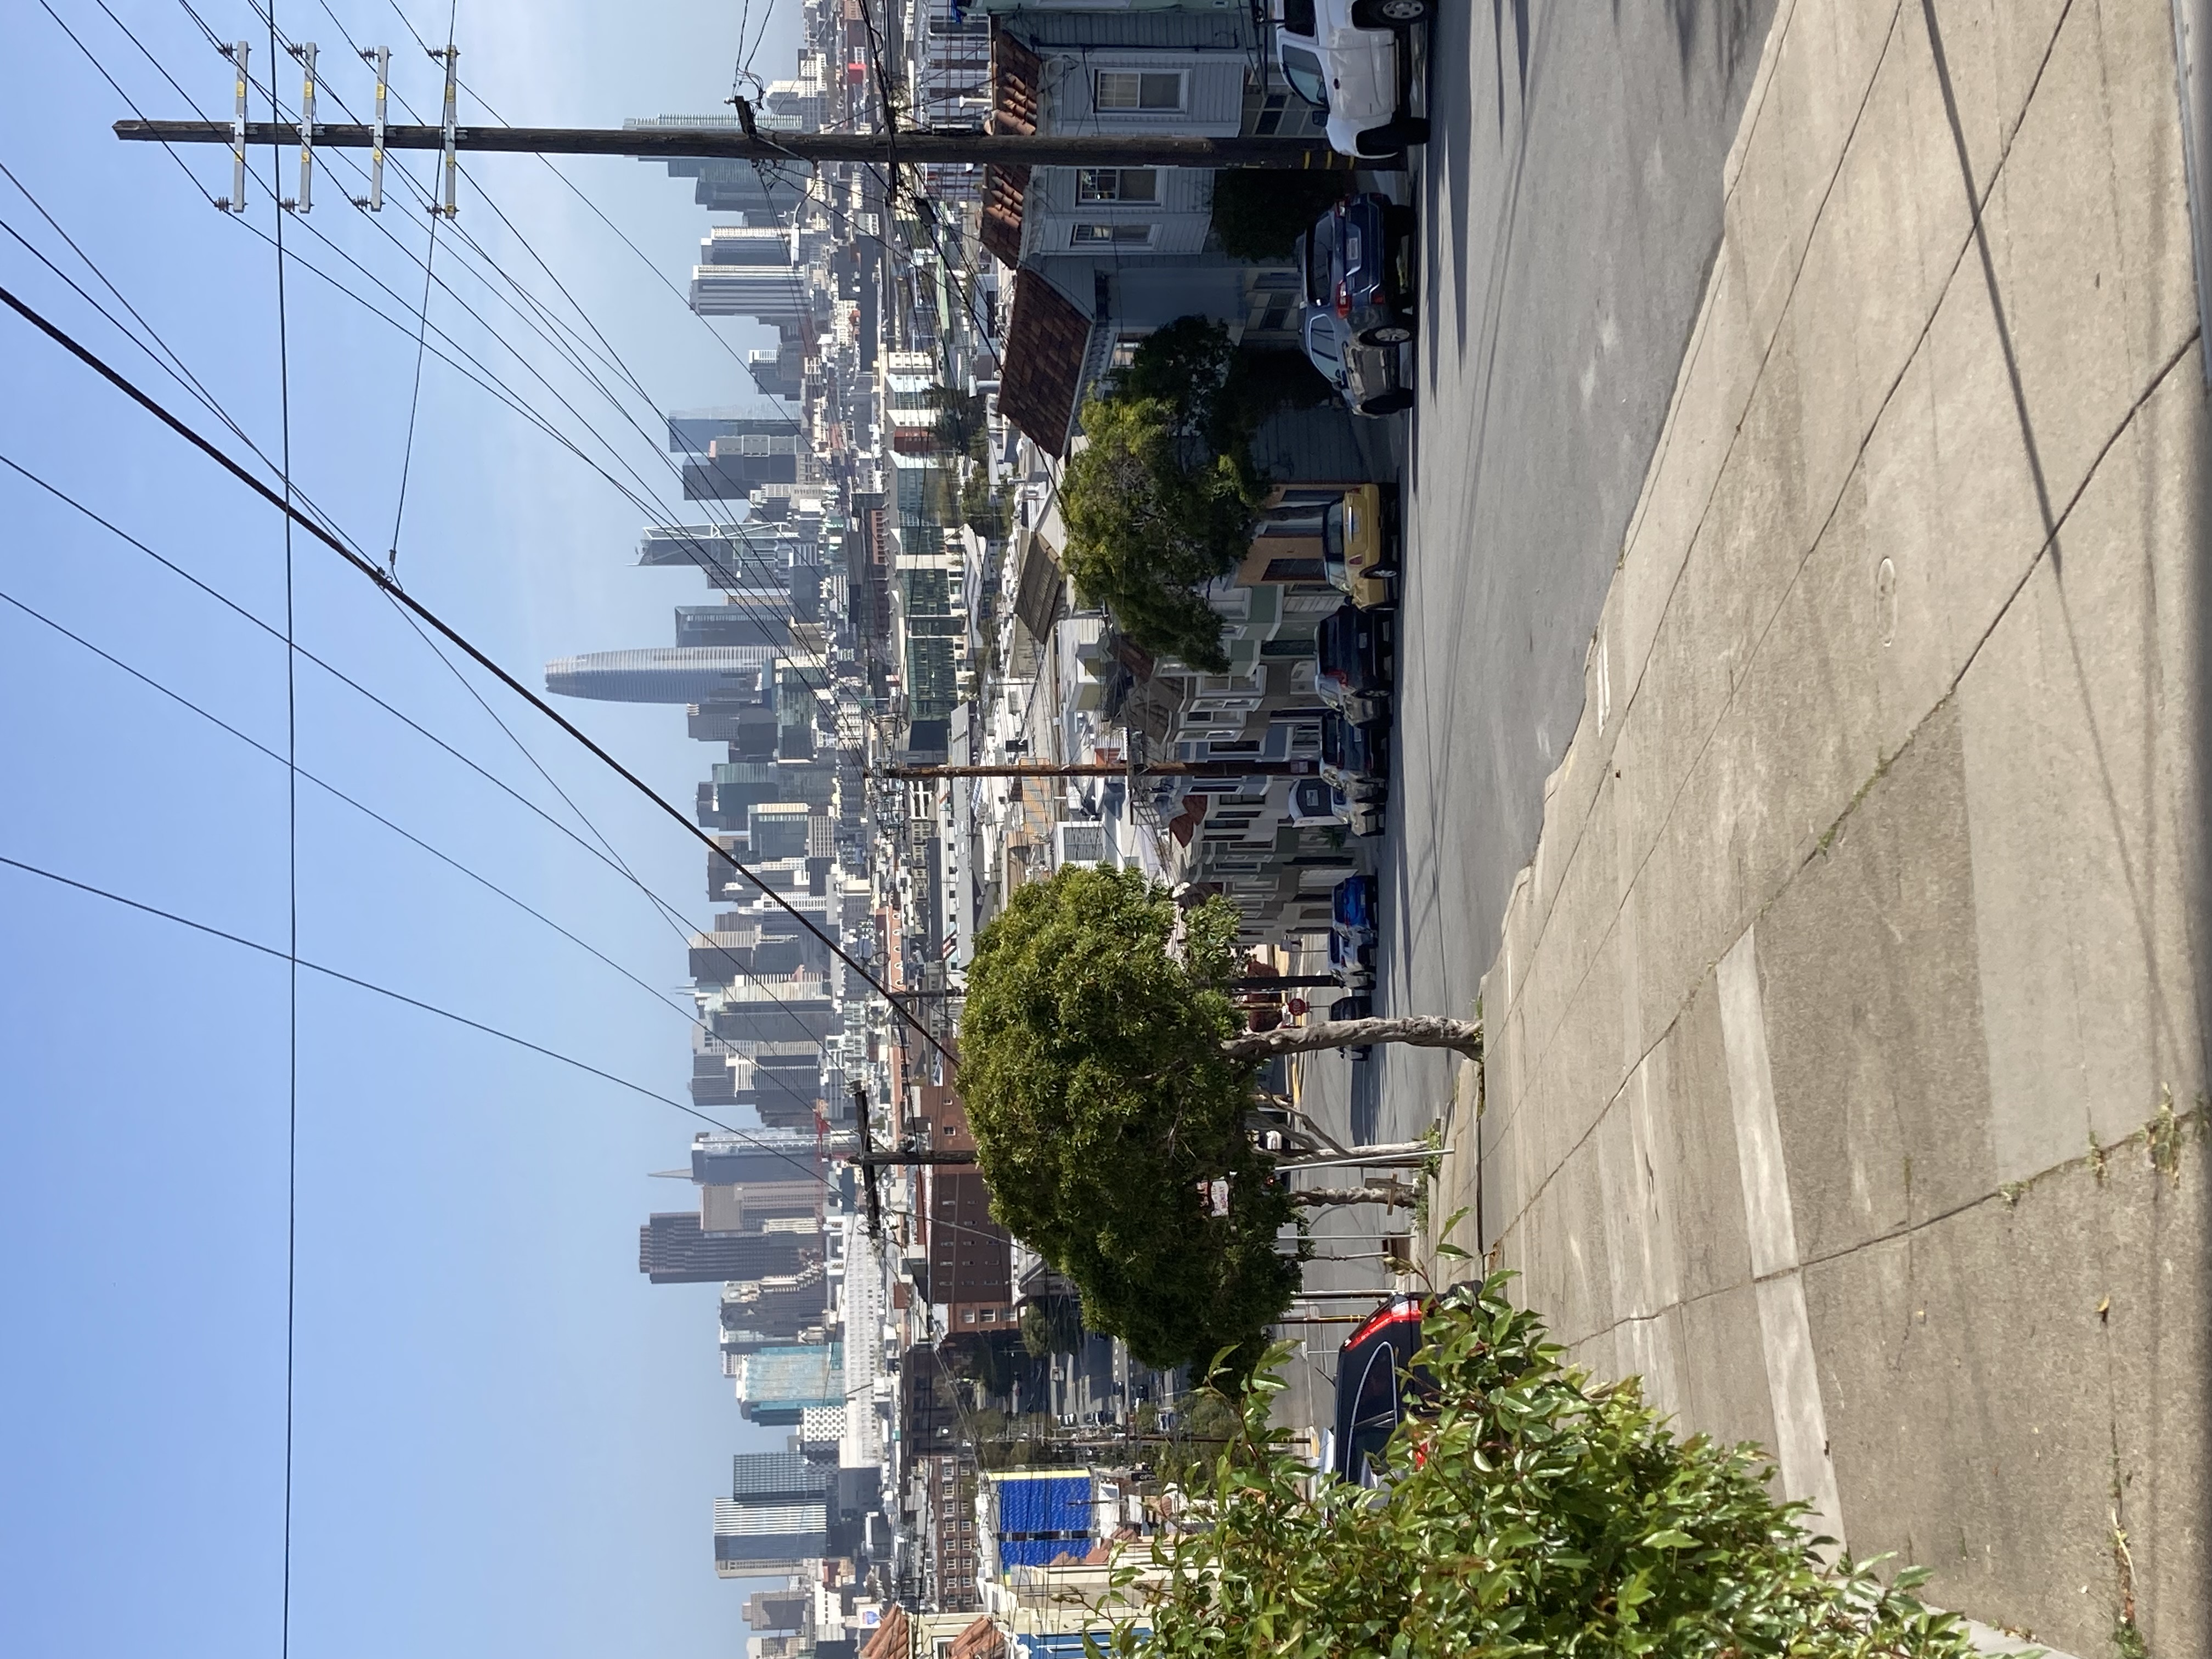 Rustige straat in San Francisco op een zonnige zondagmiddag